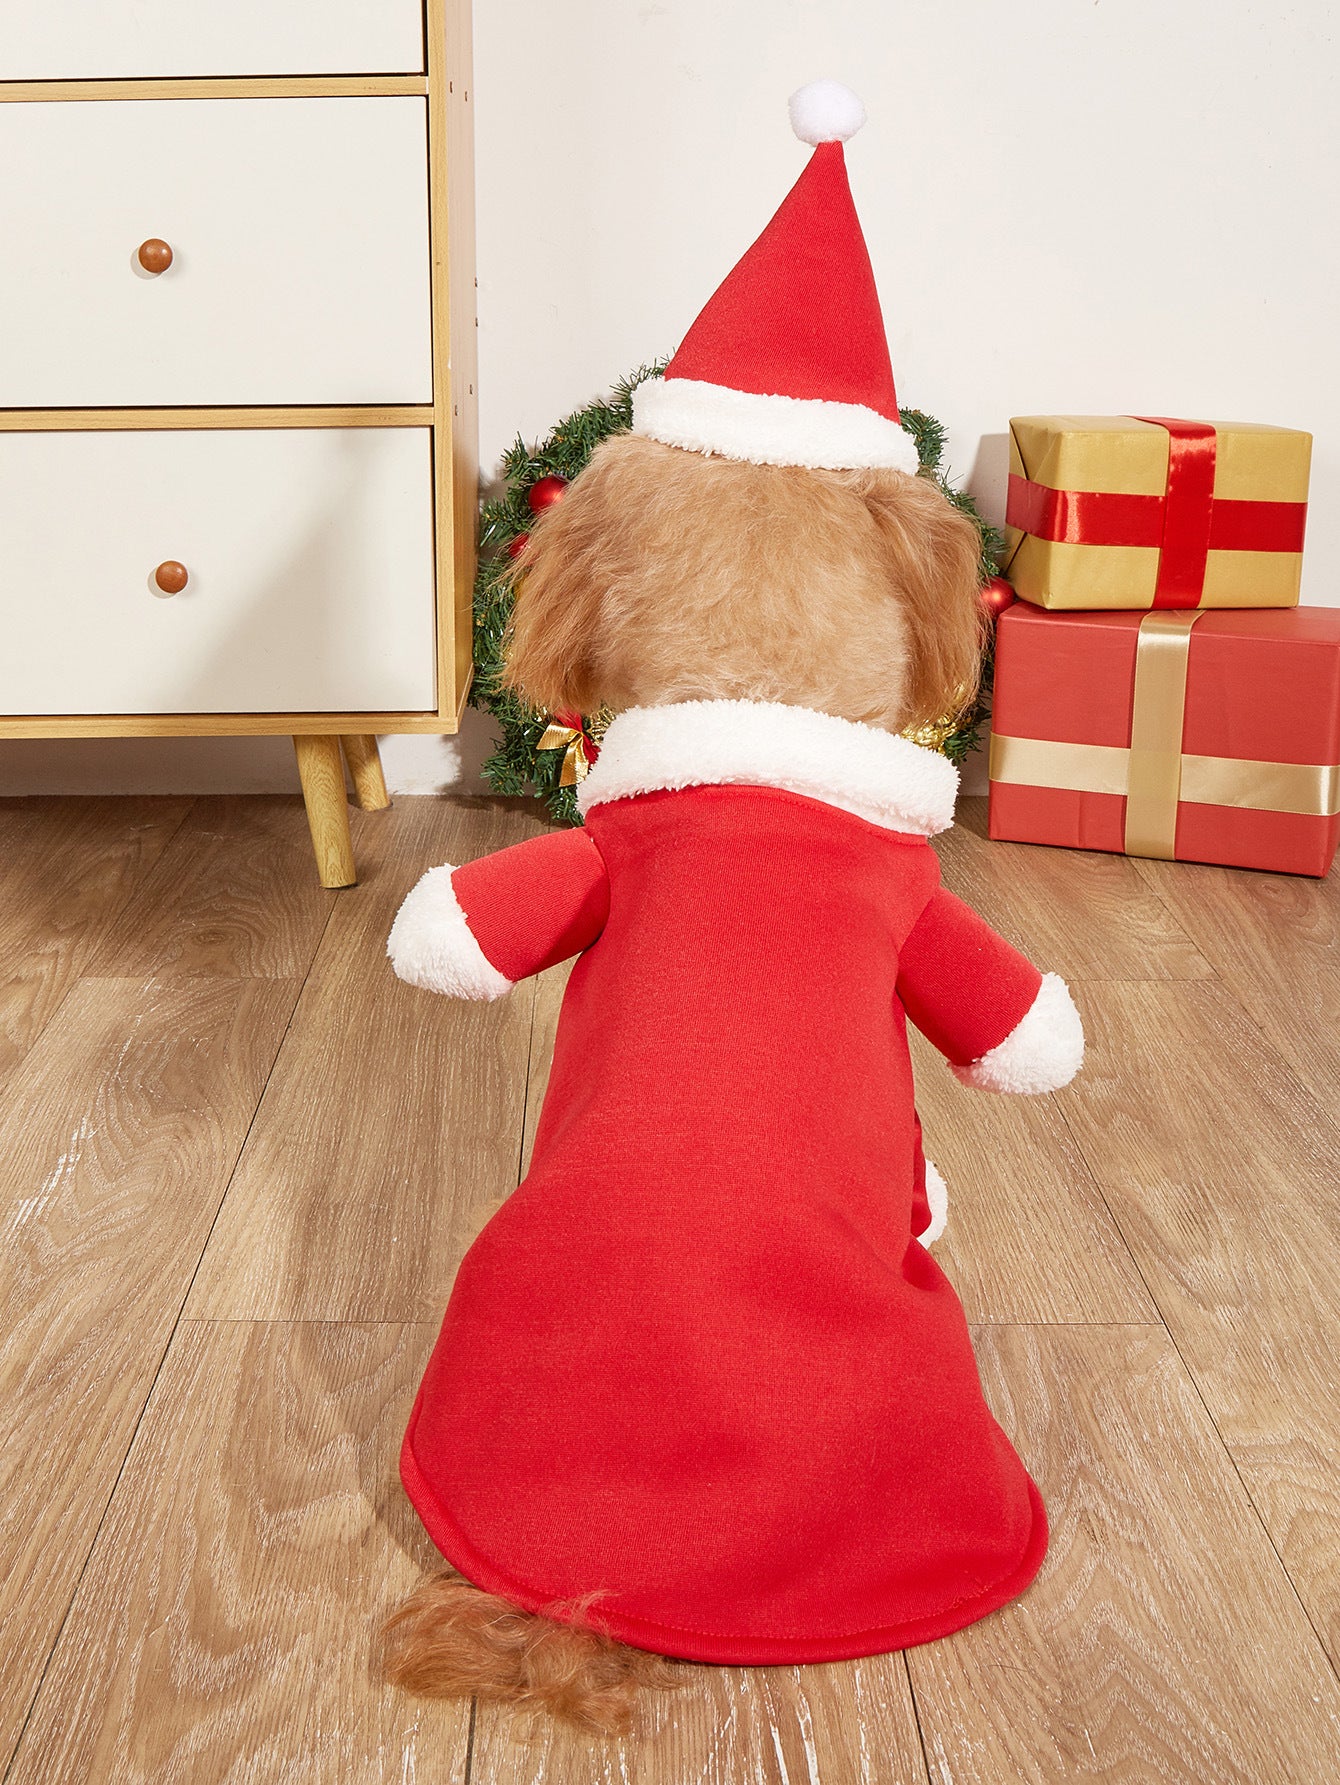 Christmas Small Dog Costume